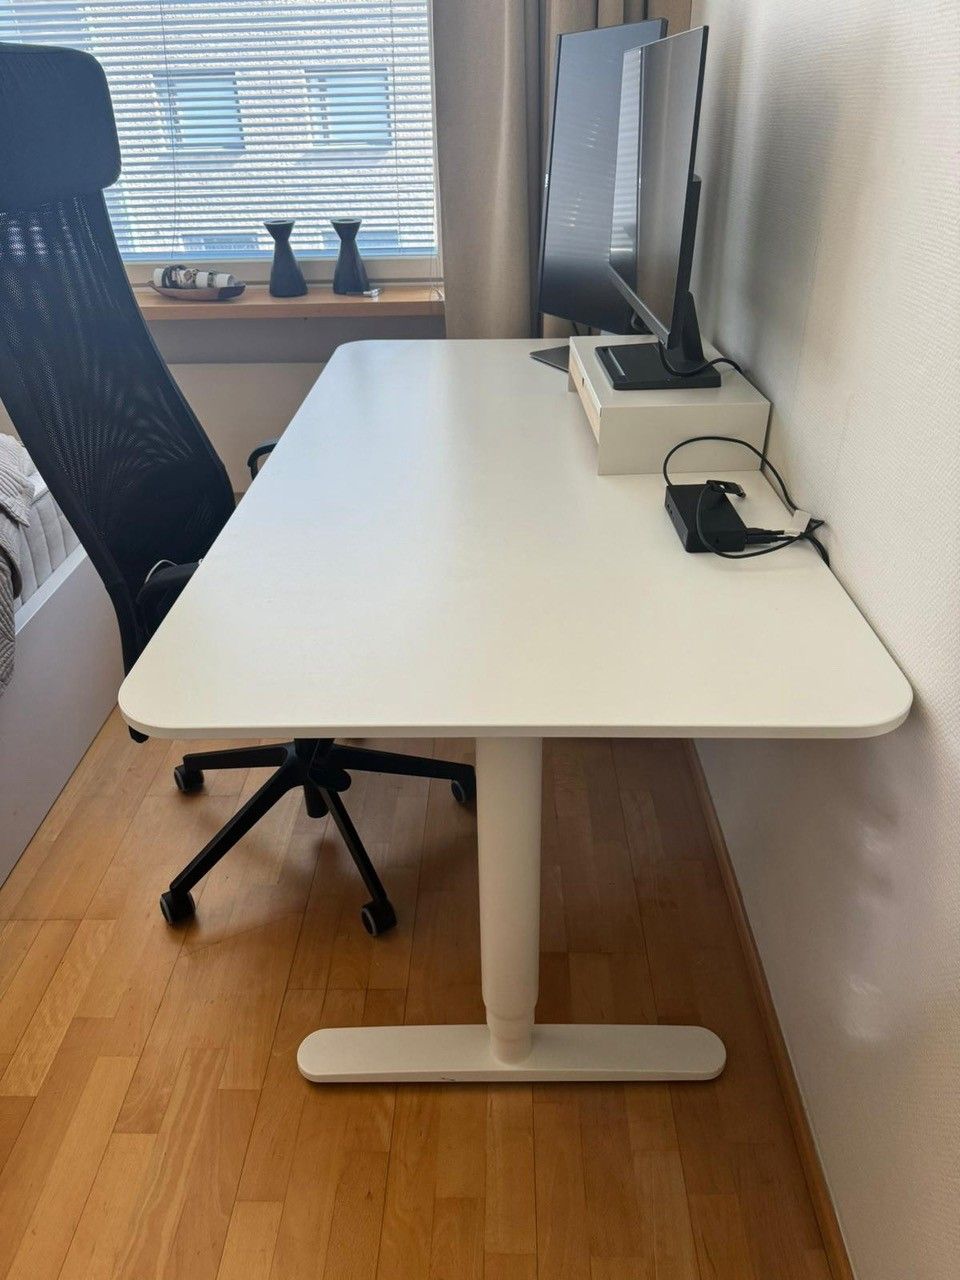 Ikea bekant sähkö pöytä , electric adjustable table